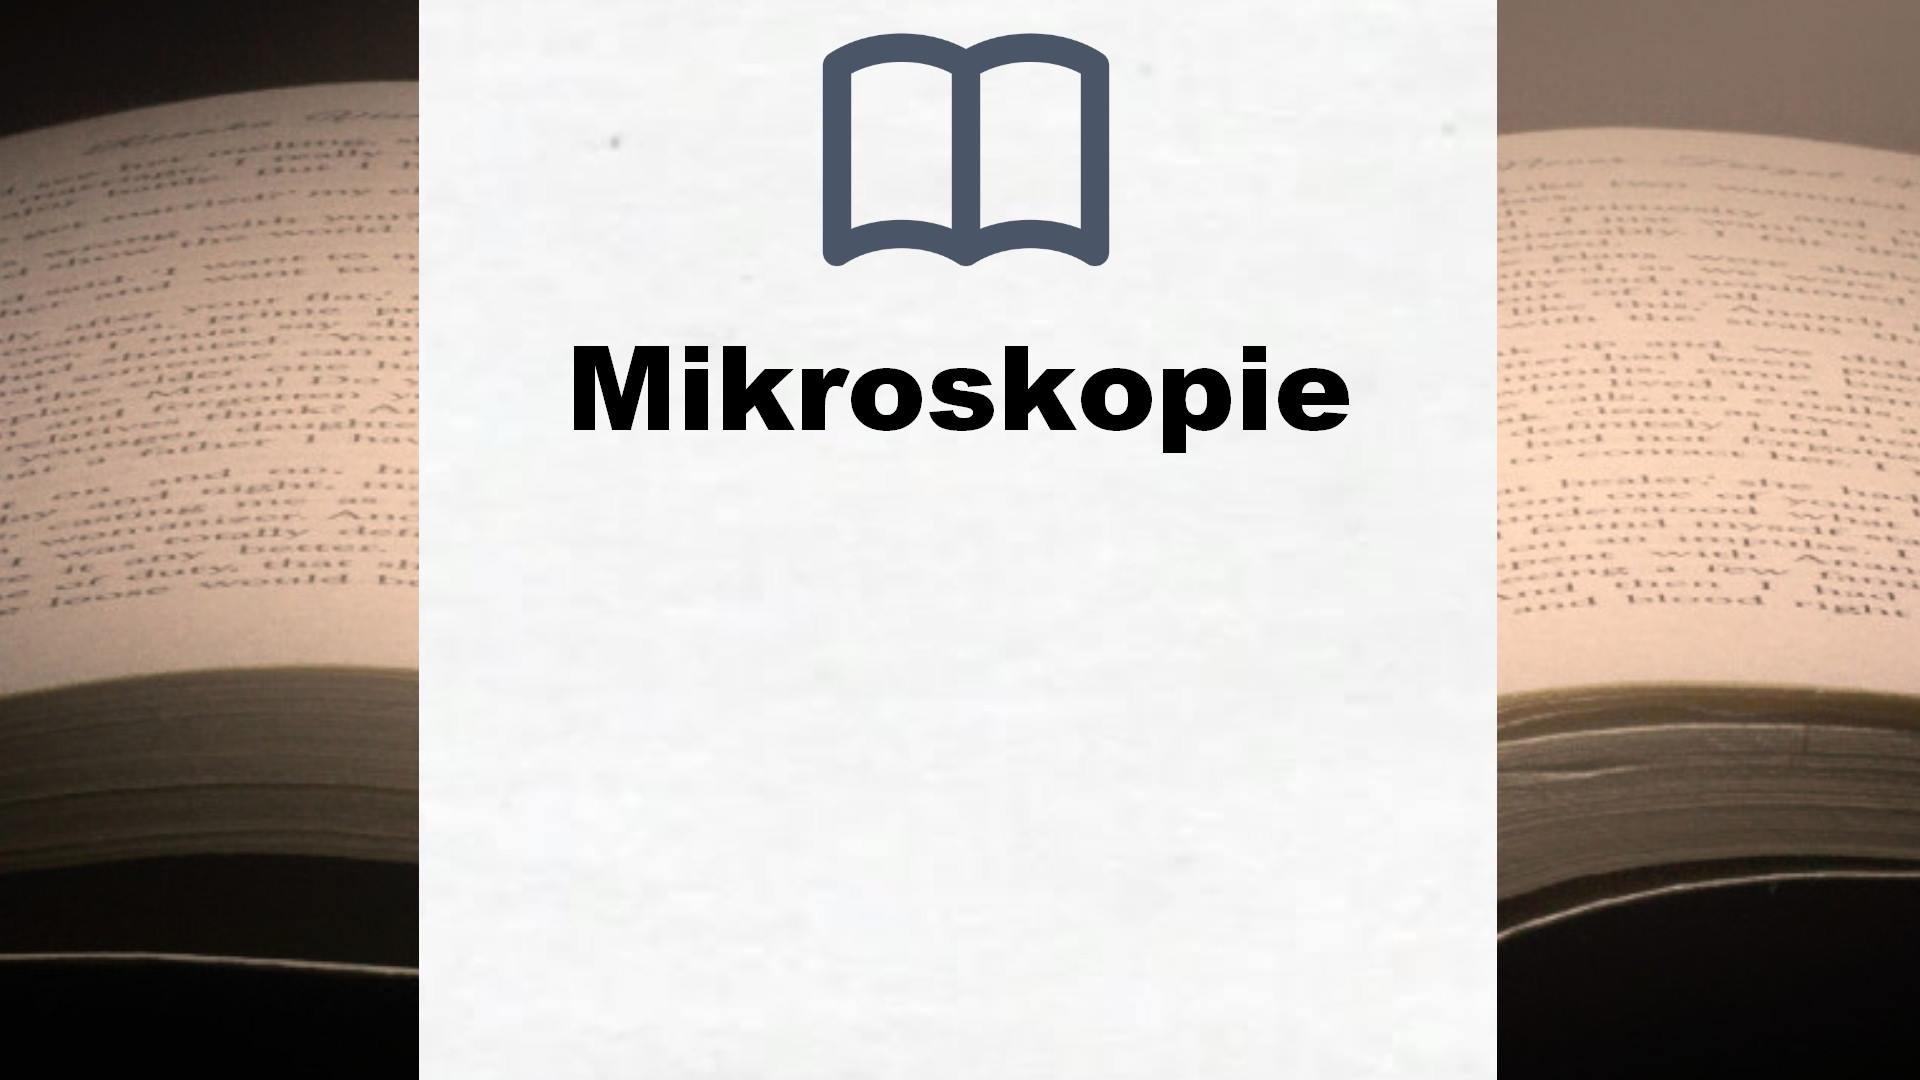 Bücher über Mikroskopie